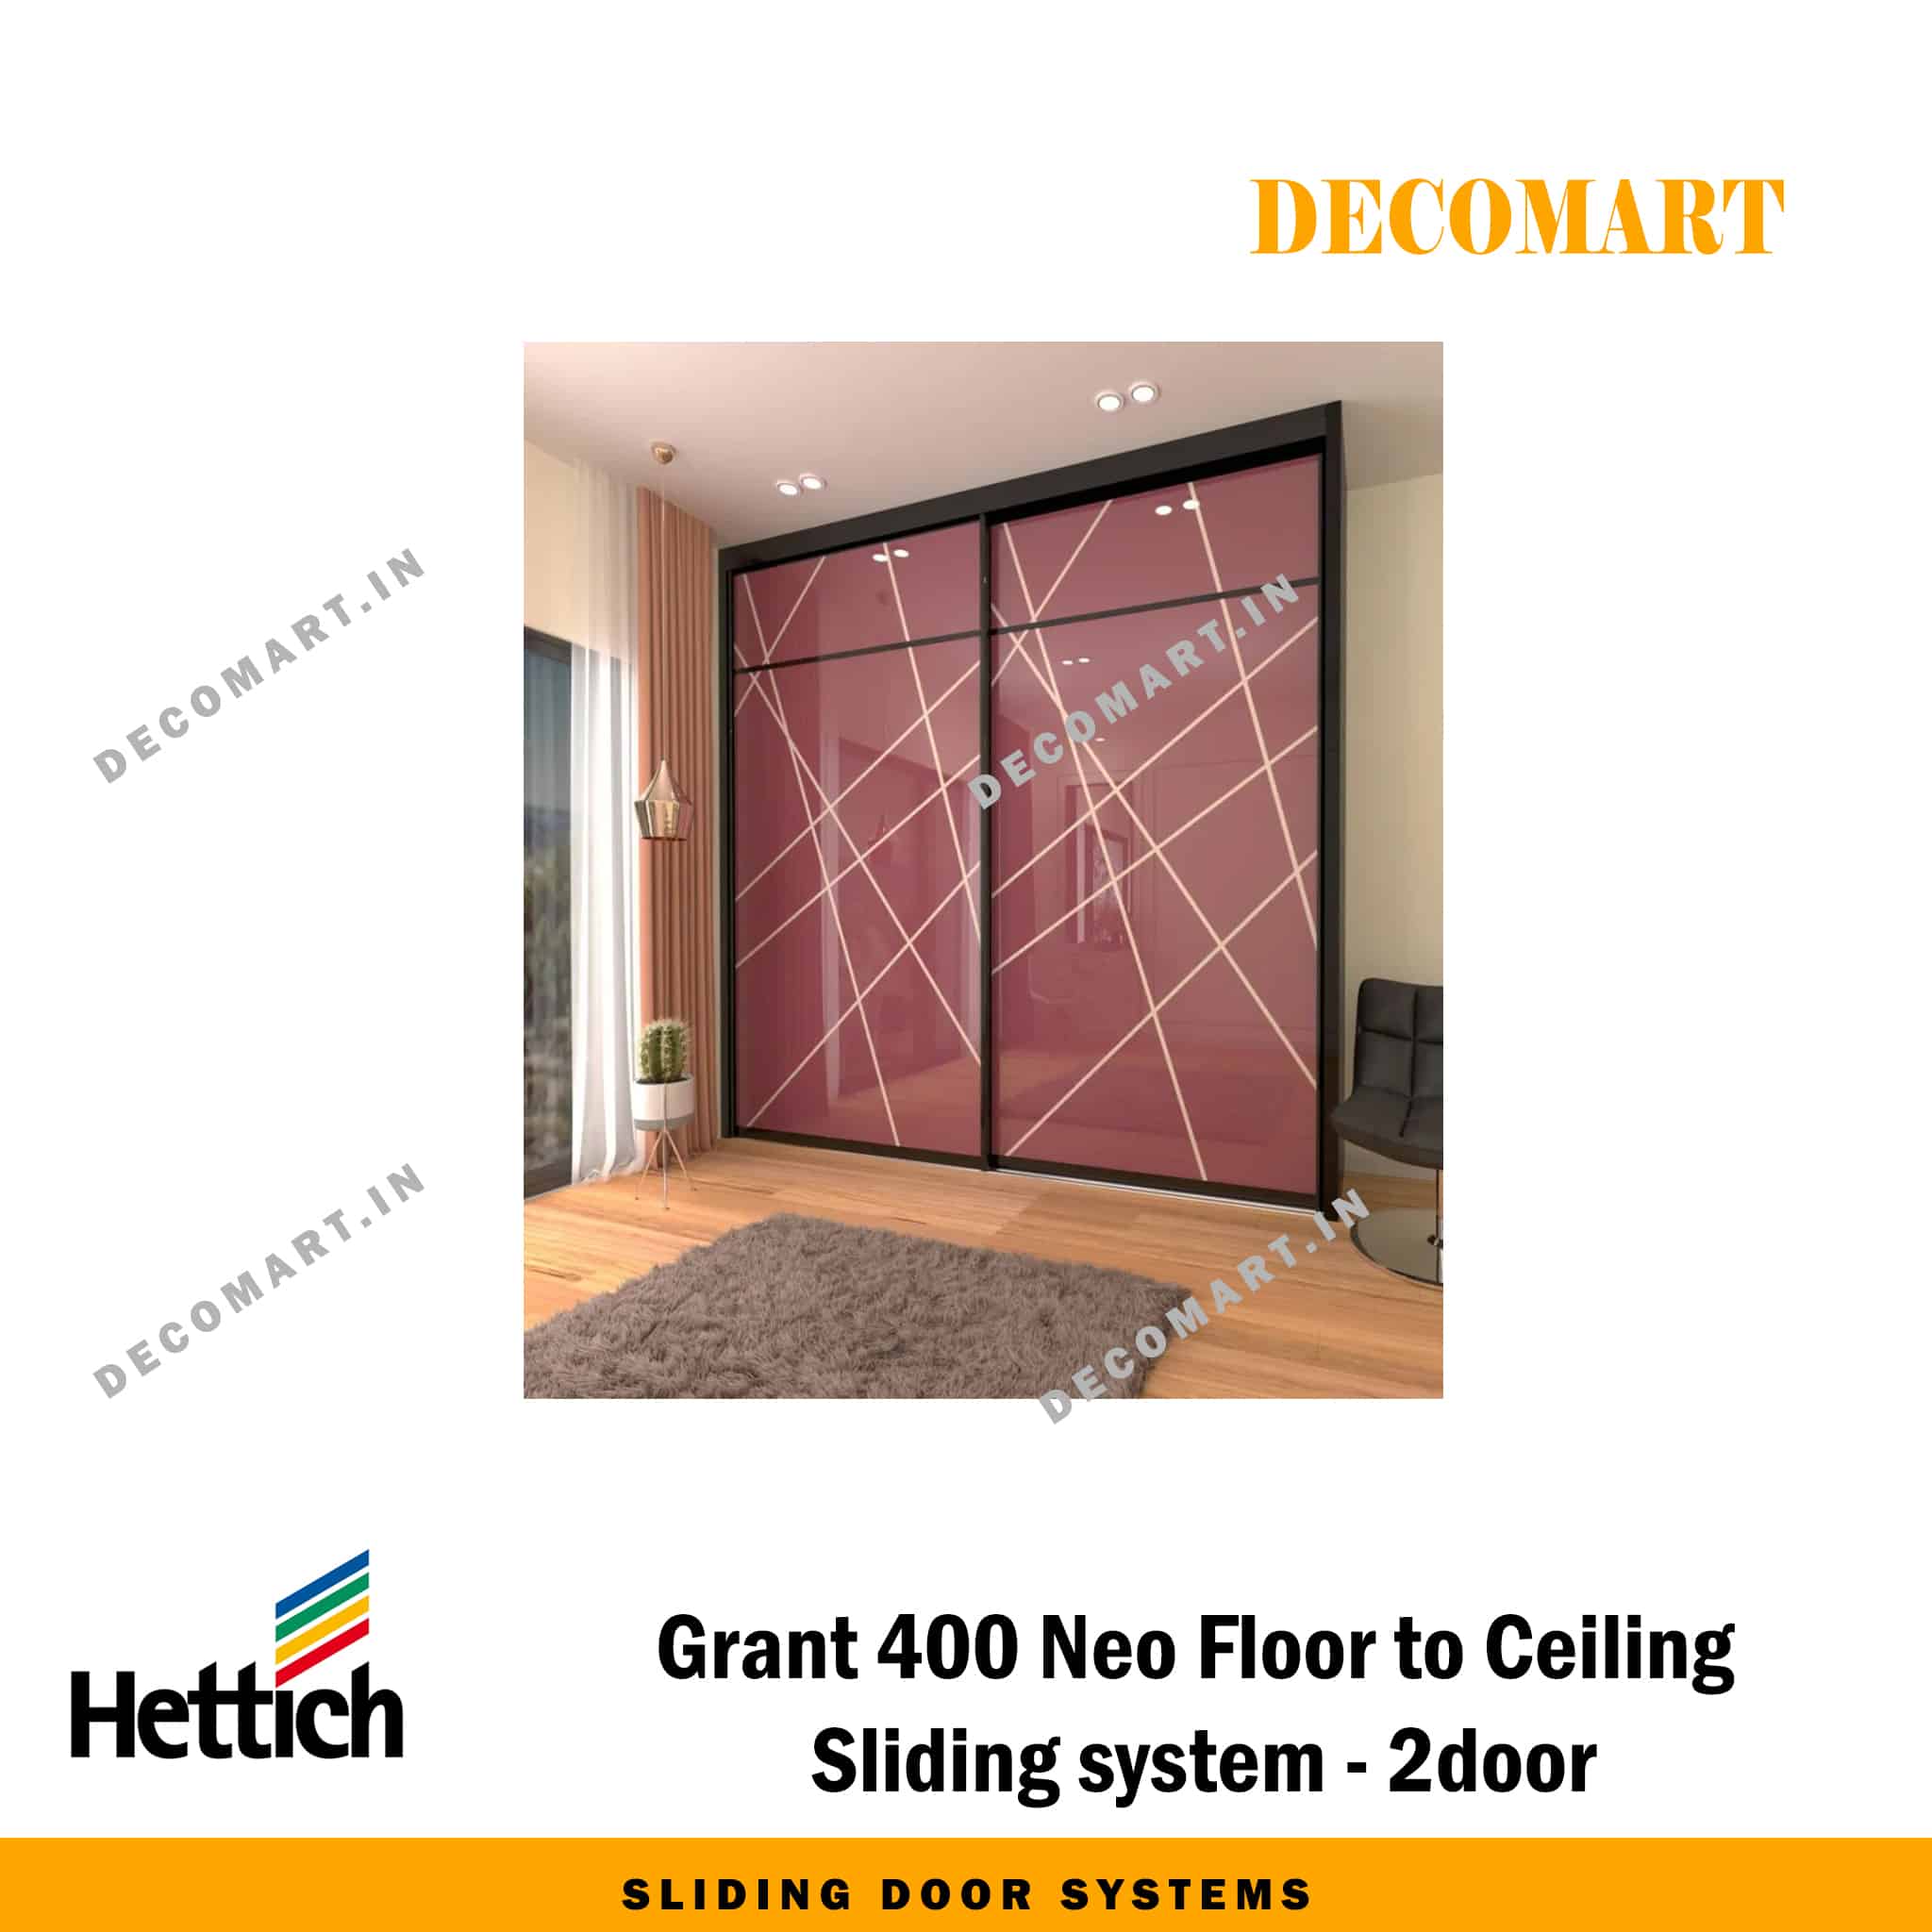 Hettich Grant 400 Neo Floor to Ceiling Sliding System - 2 Door